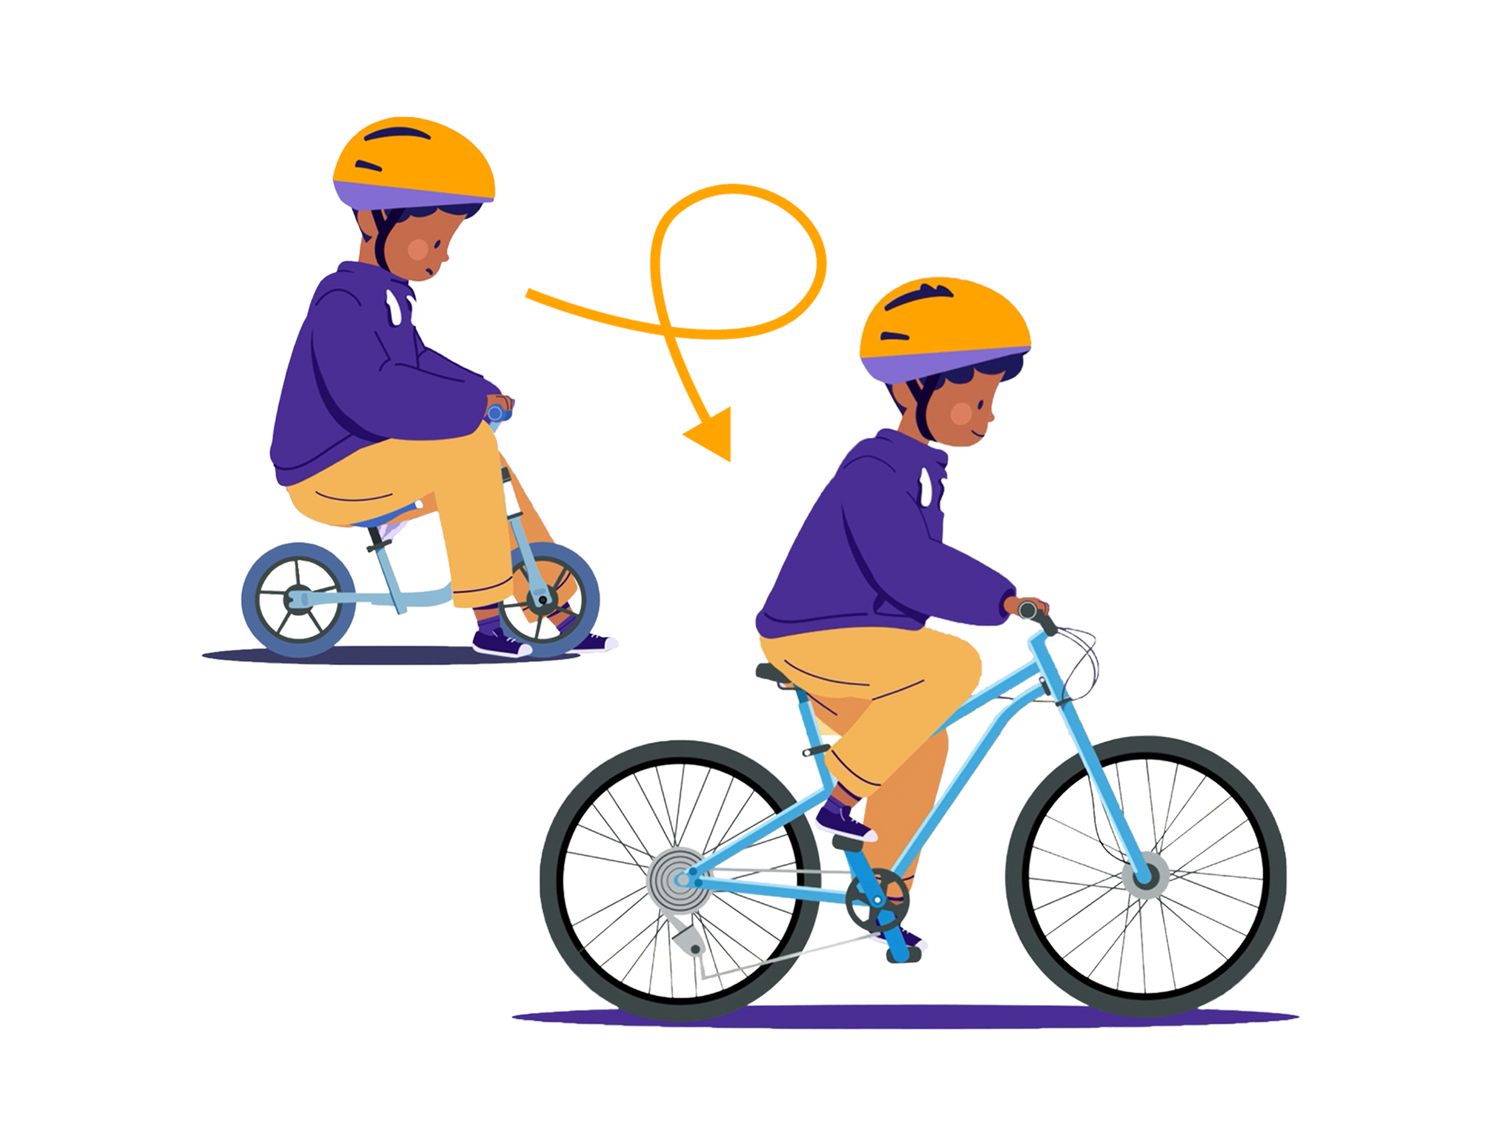 Grafik zeigt ein Kind erst klein auf einem Laufrad dann groß auf einem Kinderfahrrad als Symbol für Austauschprozess bei Bike Club Kinderfahrrad Abo